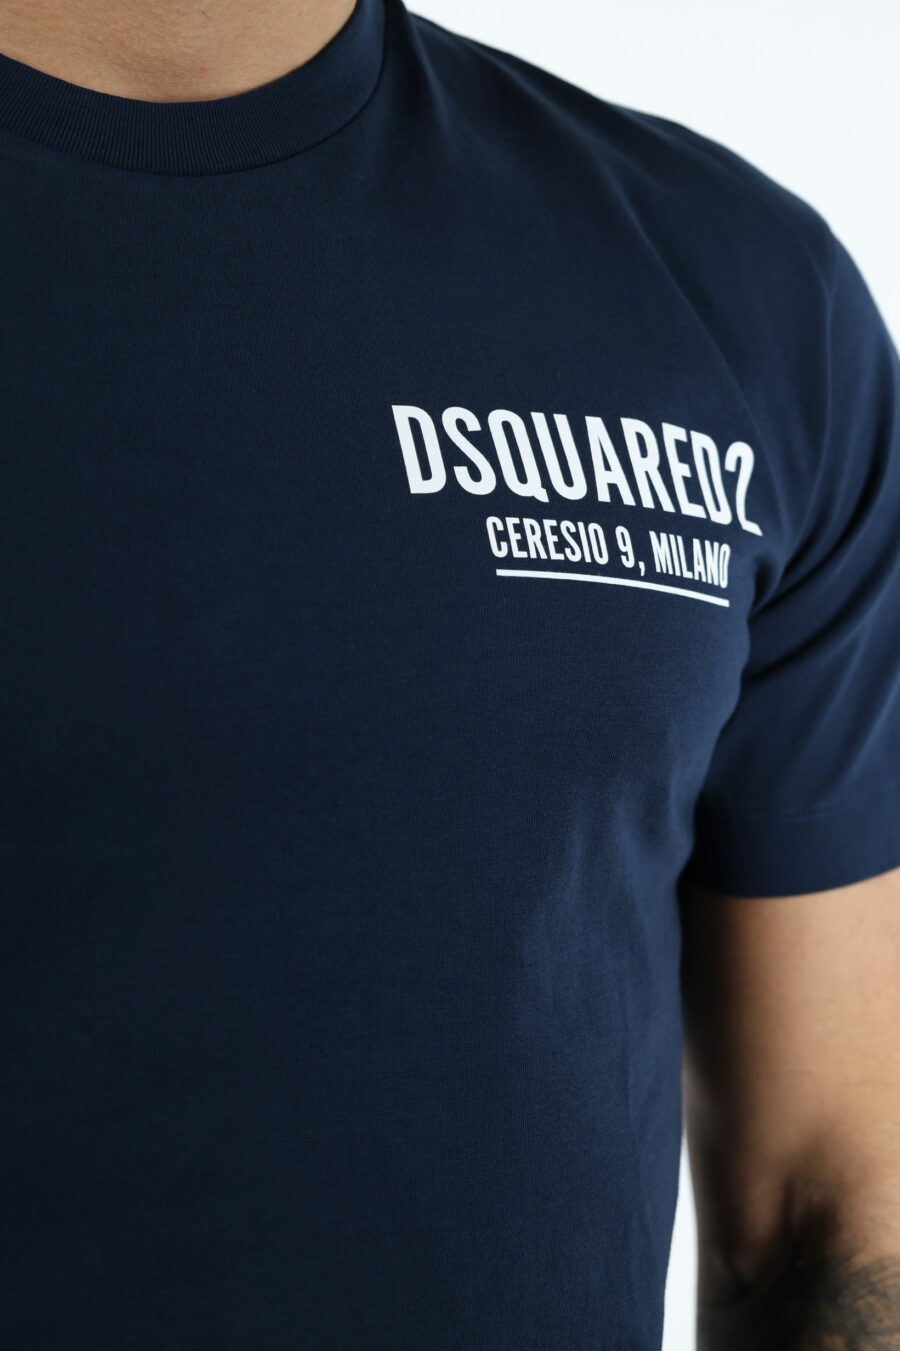 Camiseta azul oscura con minilogo "ceresio 9, milano" - 107100